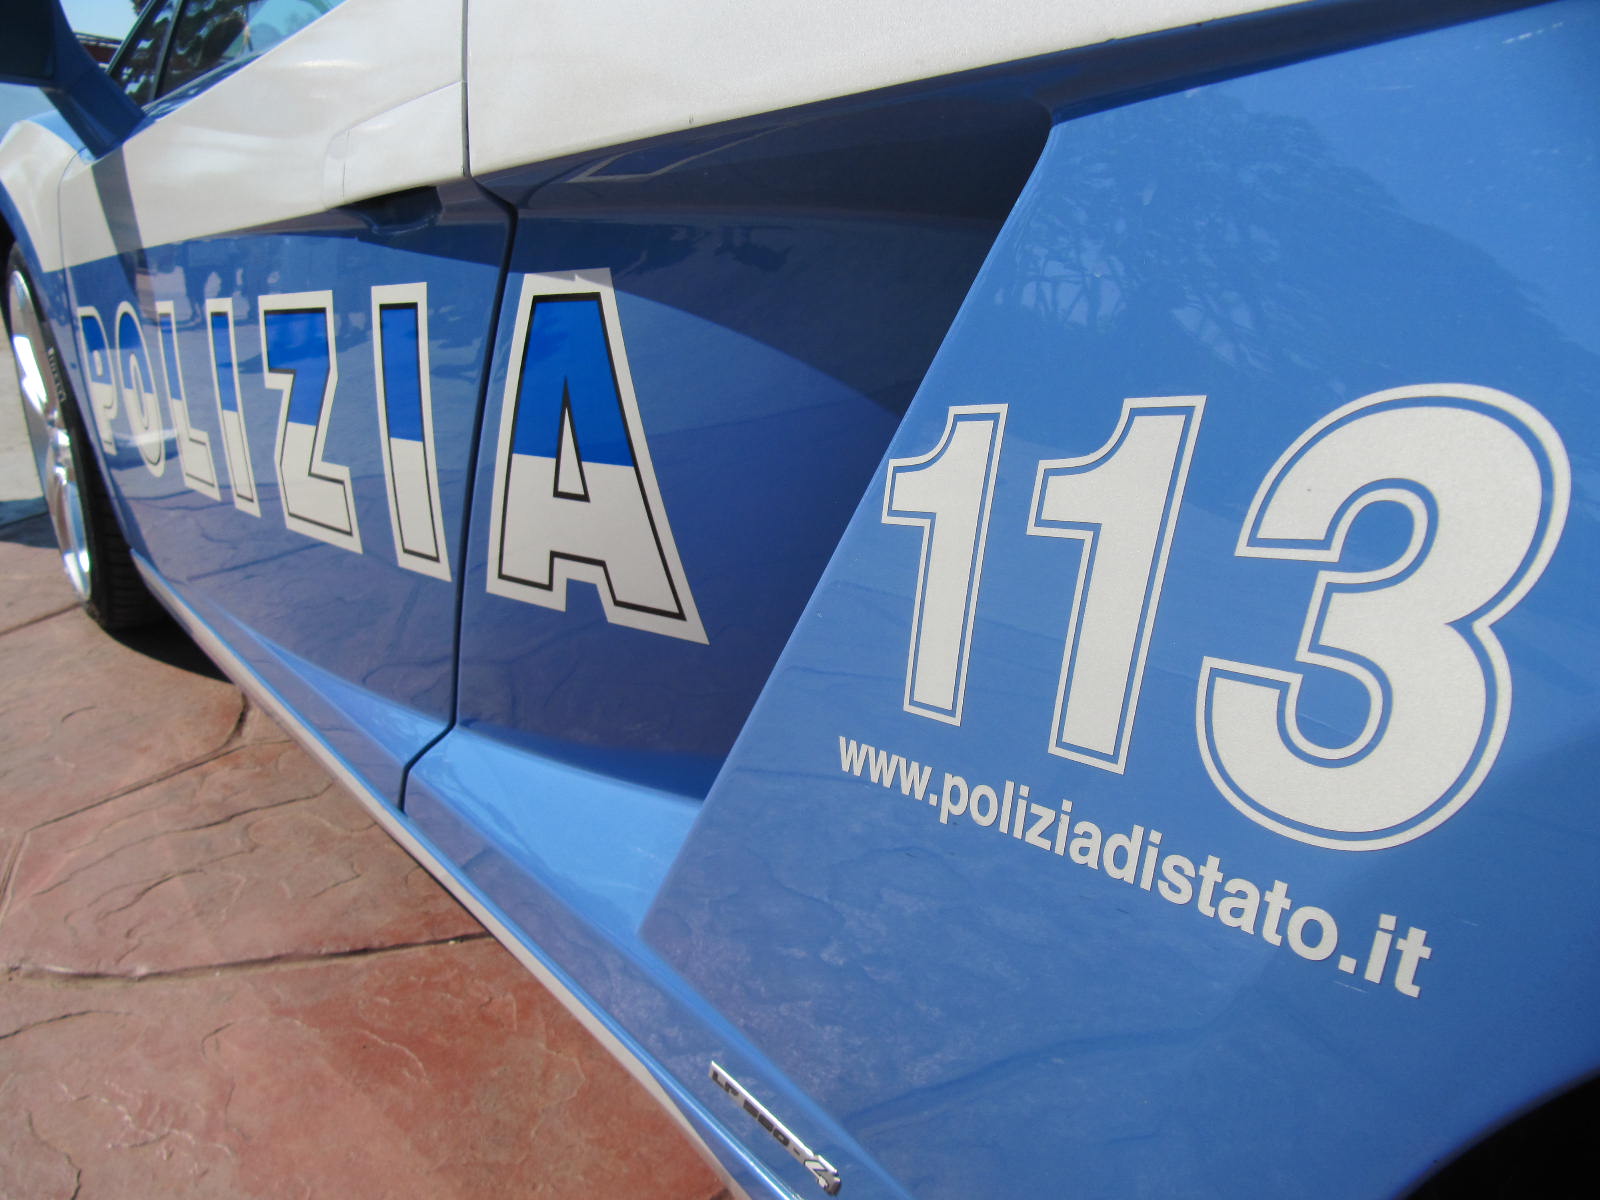 Rintracciata dalla Polizia Veronica, la sedicenne scomparsa a Palermo